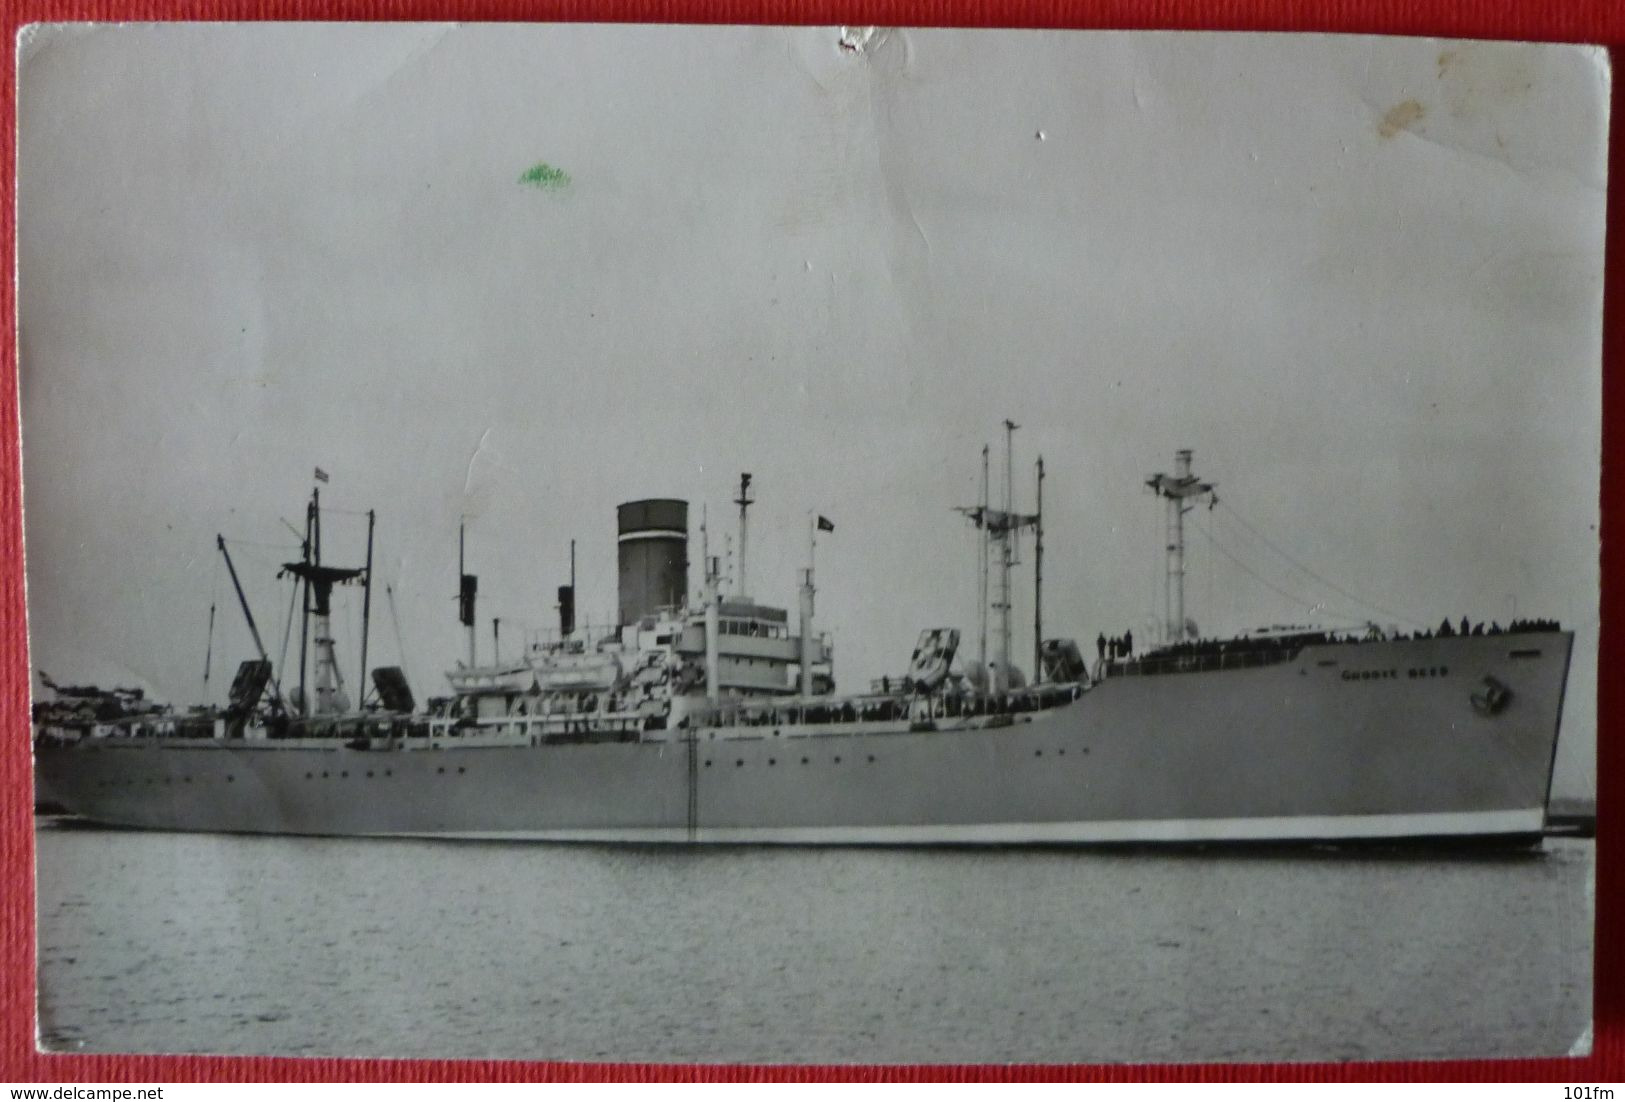 S.S. GROOTE BEER - NV Scheepvaart Mij "Trans-Oceaan" - Dampfer